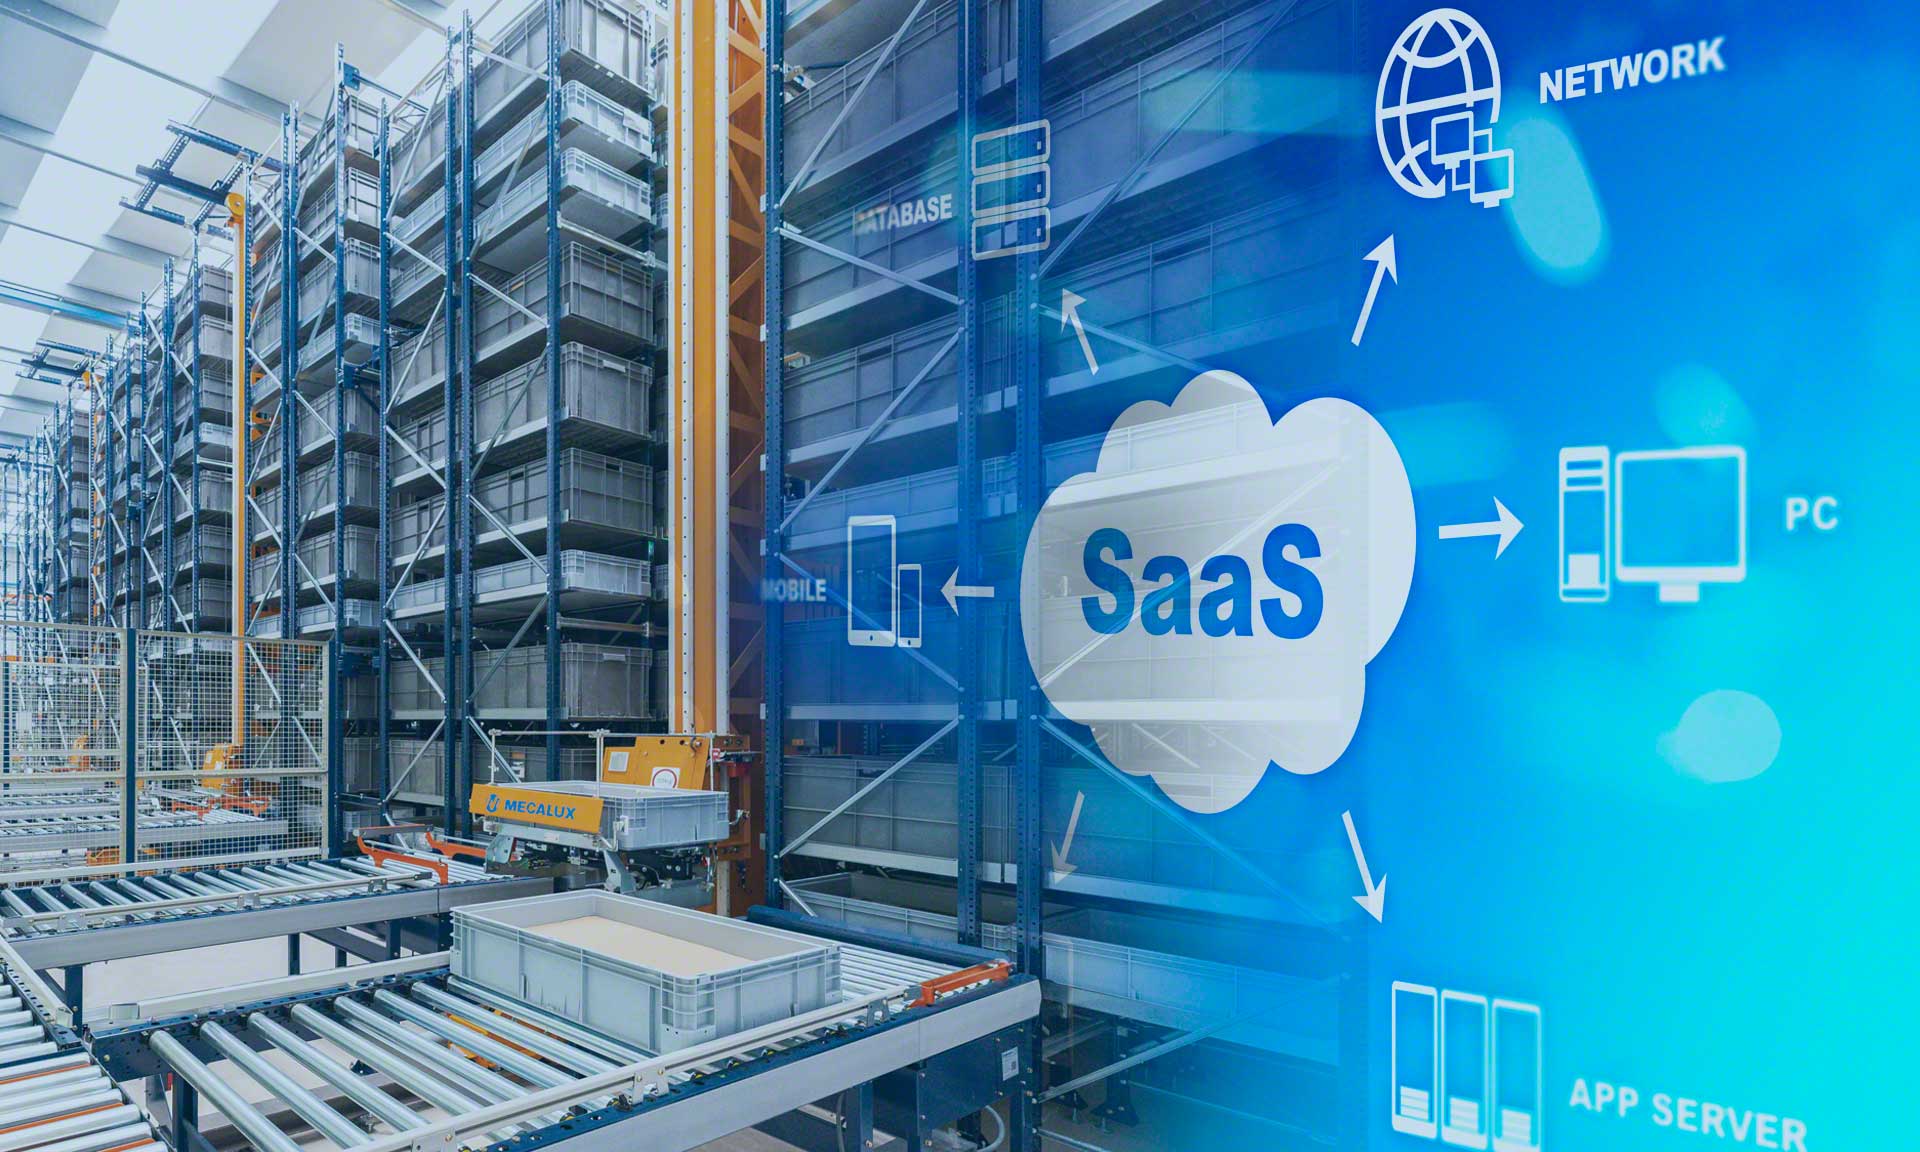 La tecnología SaaS favorece la escalabilidad y flexibilidad en la digitalización del almacén